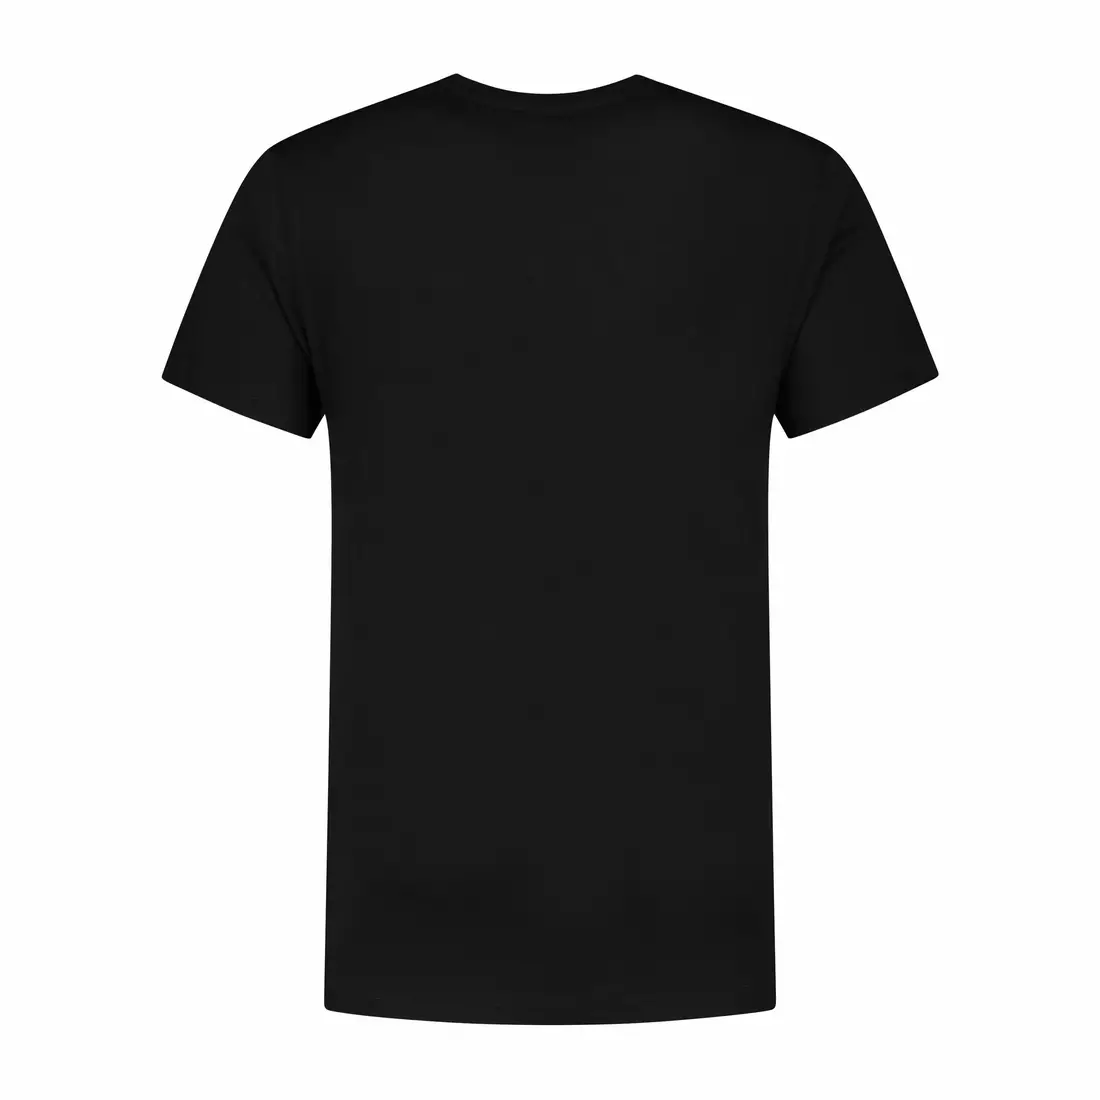 Rogelli pánské tričko GRAPHIC černé